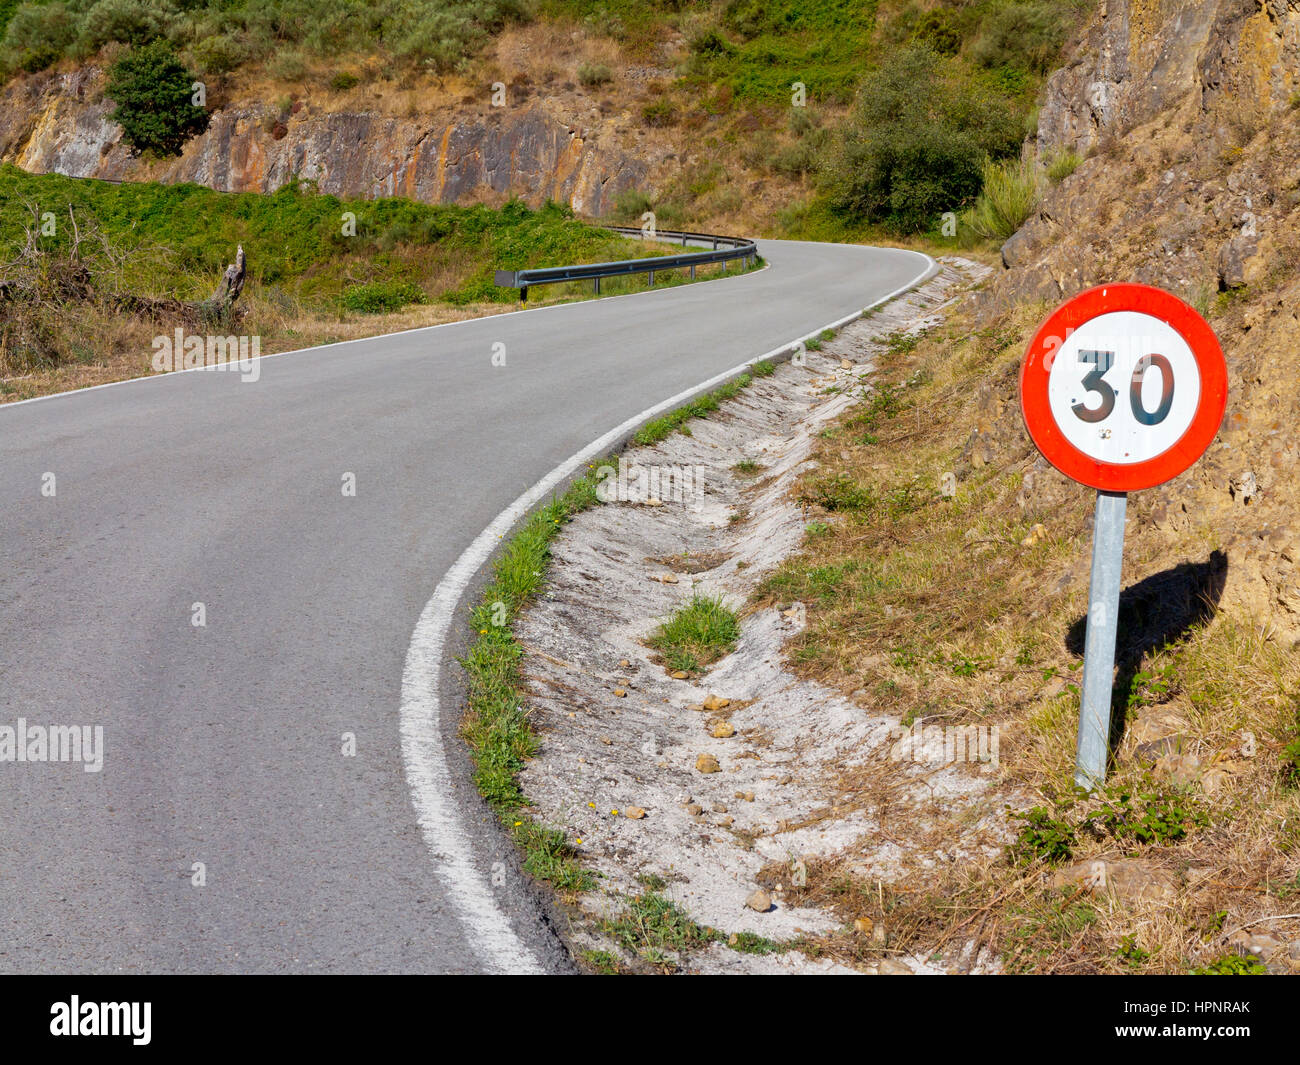 Mountain road and speed limit sign at Mirador de Penallana, Vega de Liebana, Picos de Europa National Park, Cantabria, northern Spain Stock Photo